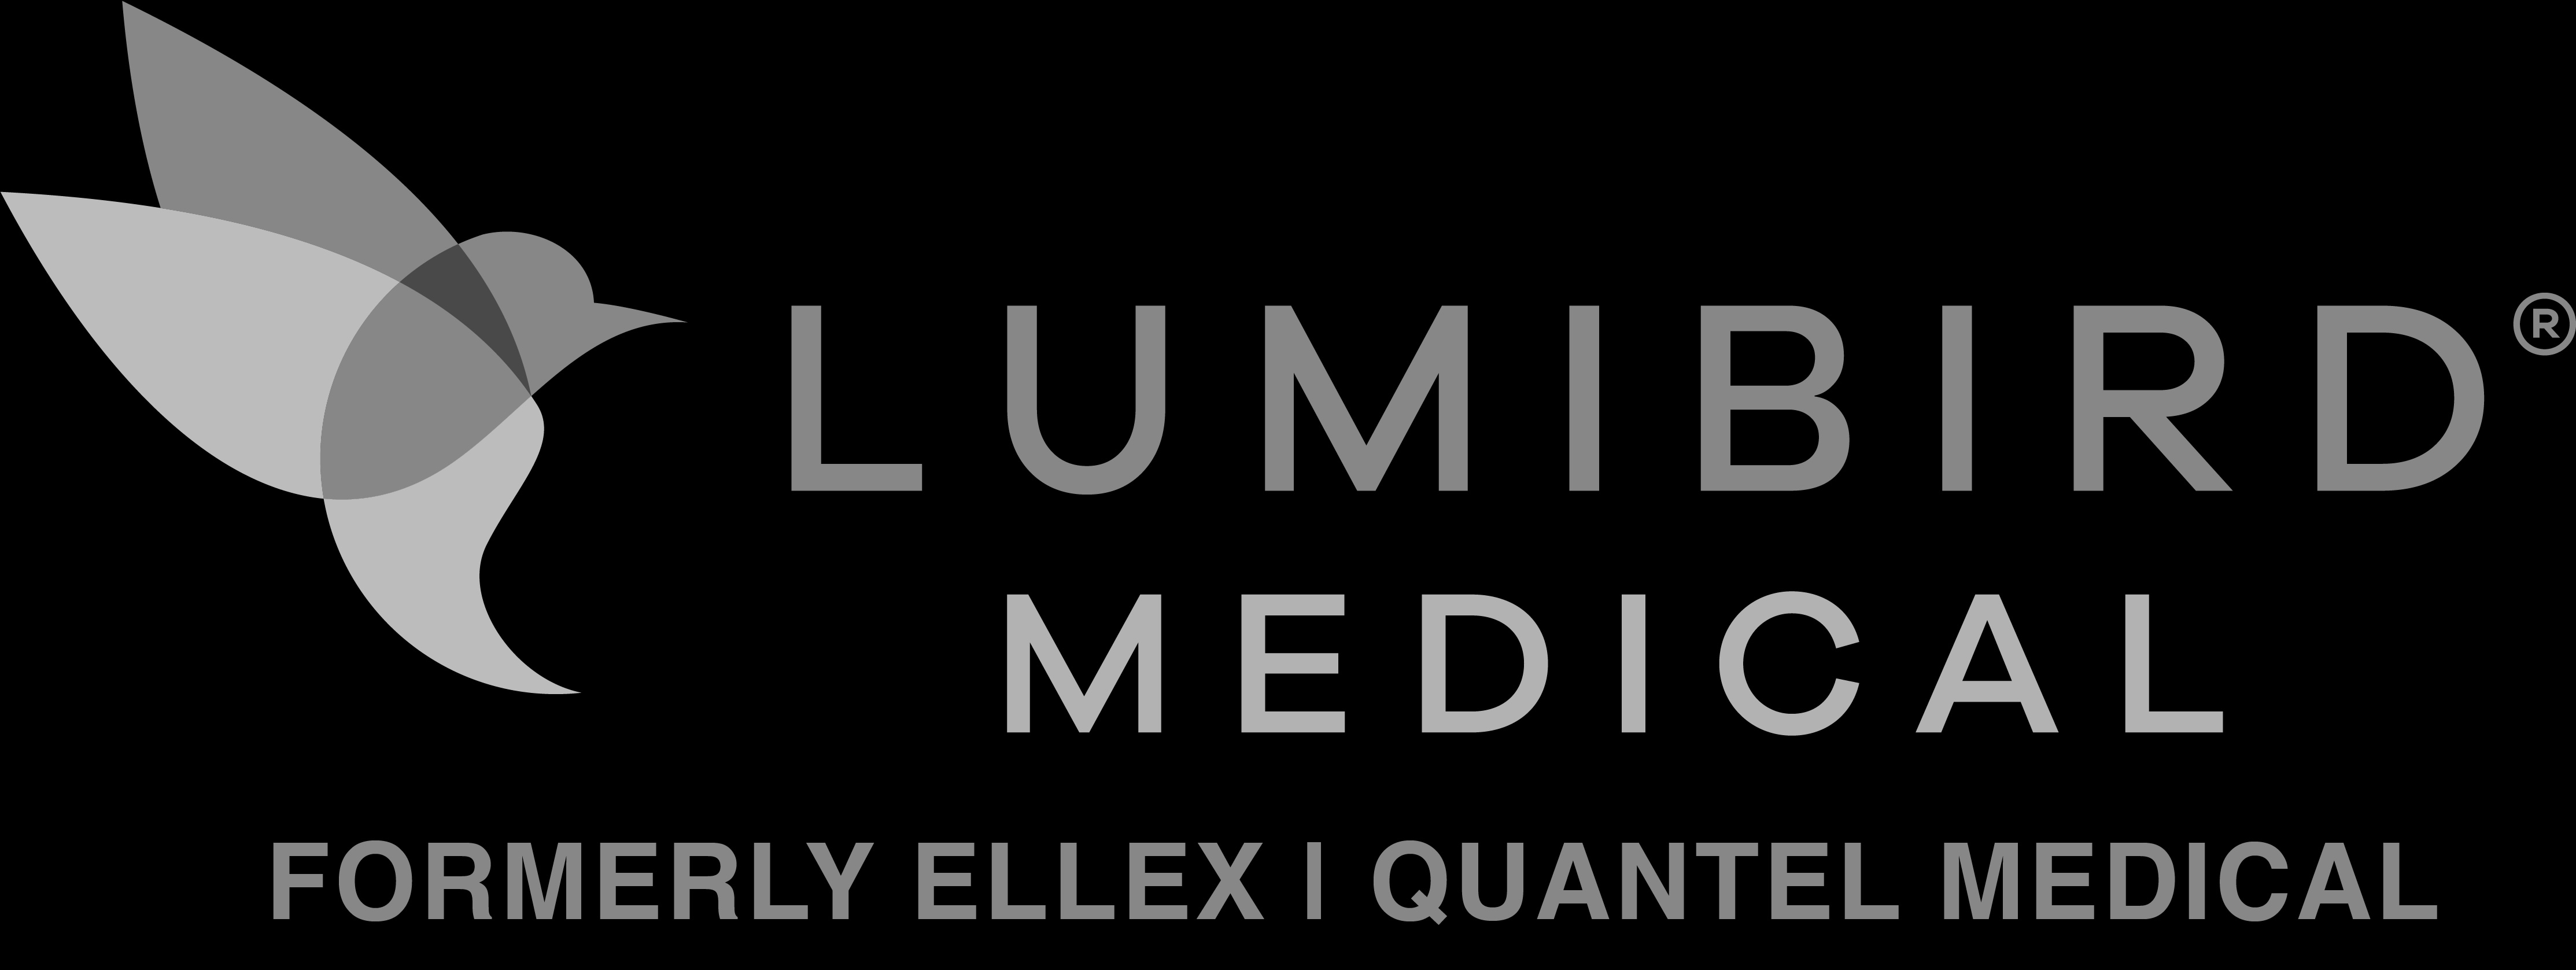 Lumibird Medical Logo